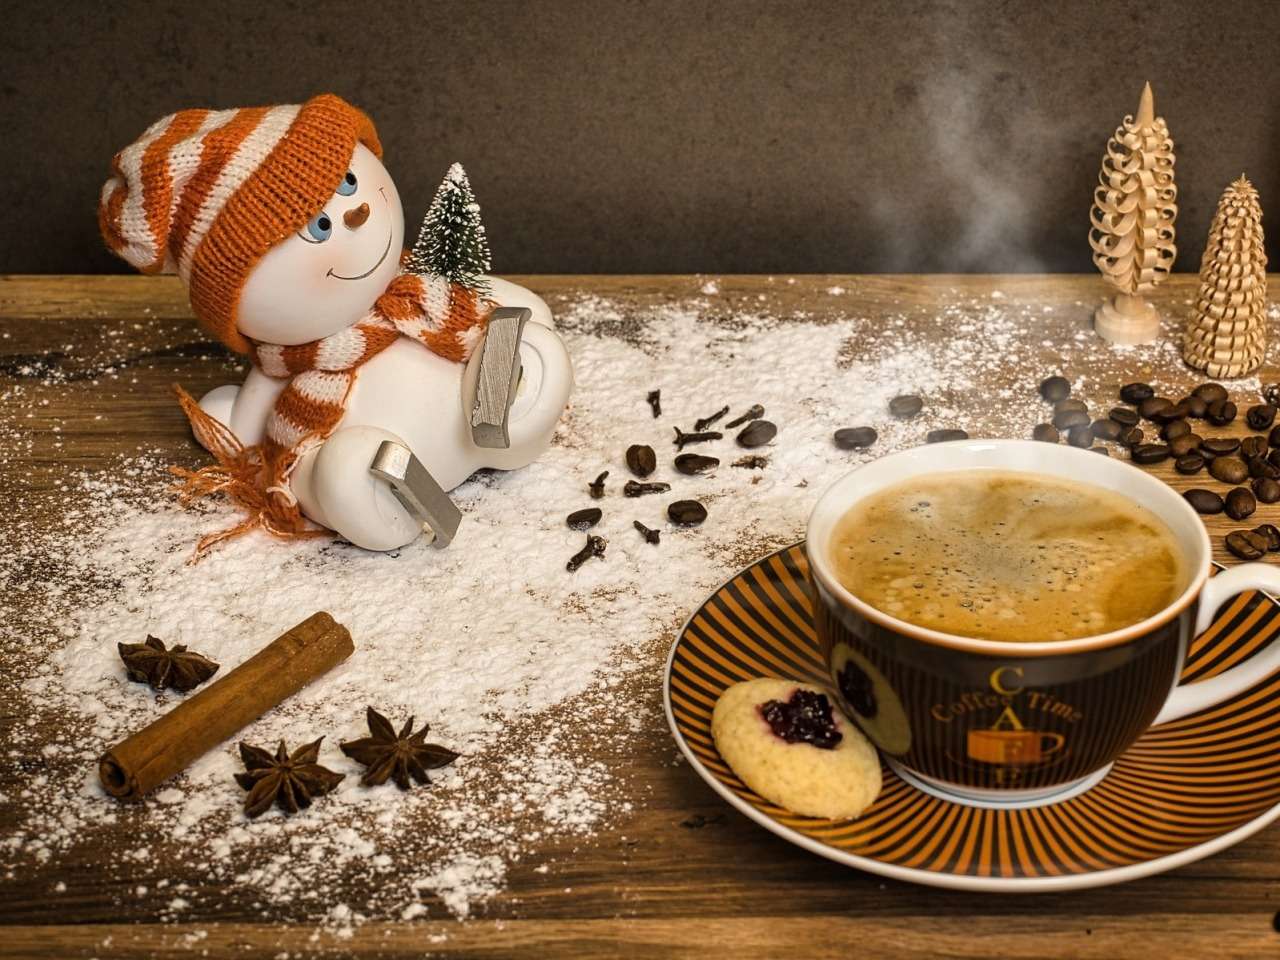 Νόστιμος χειμωνιάτικος φρεσκοαλεσμένος καφές με βανίλια :) παζλ online